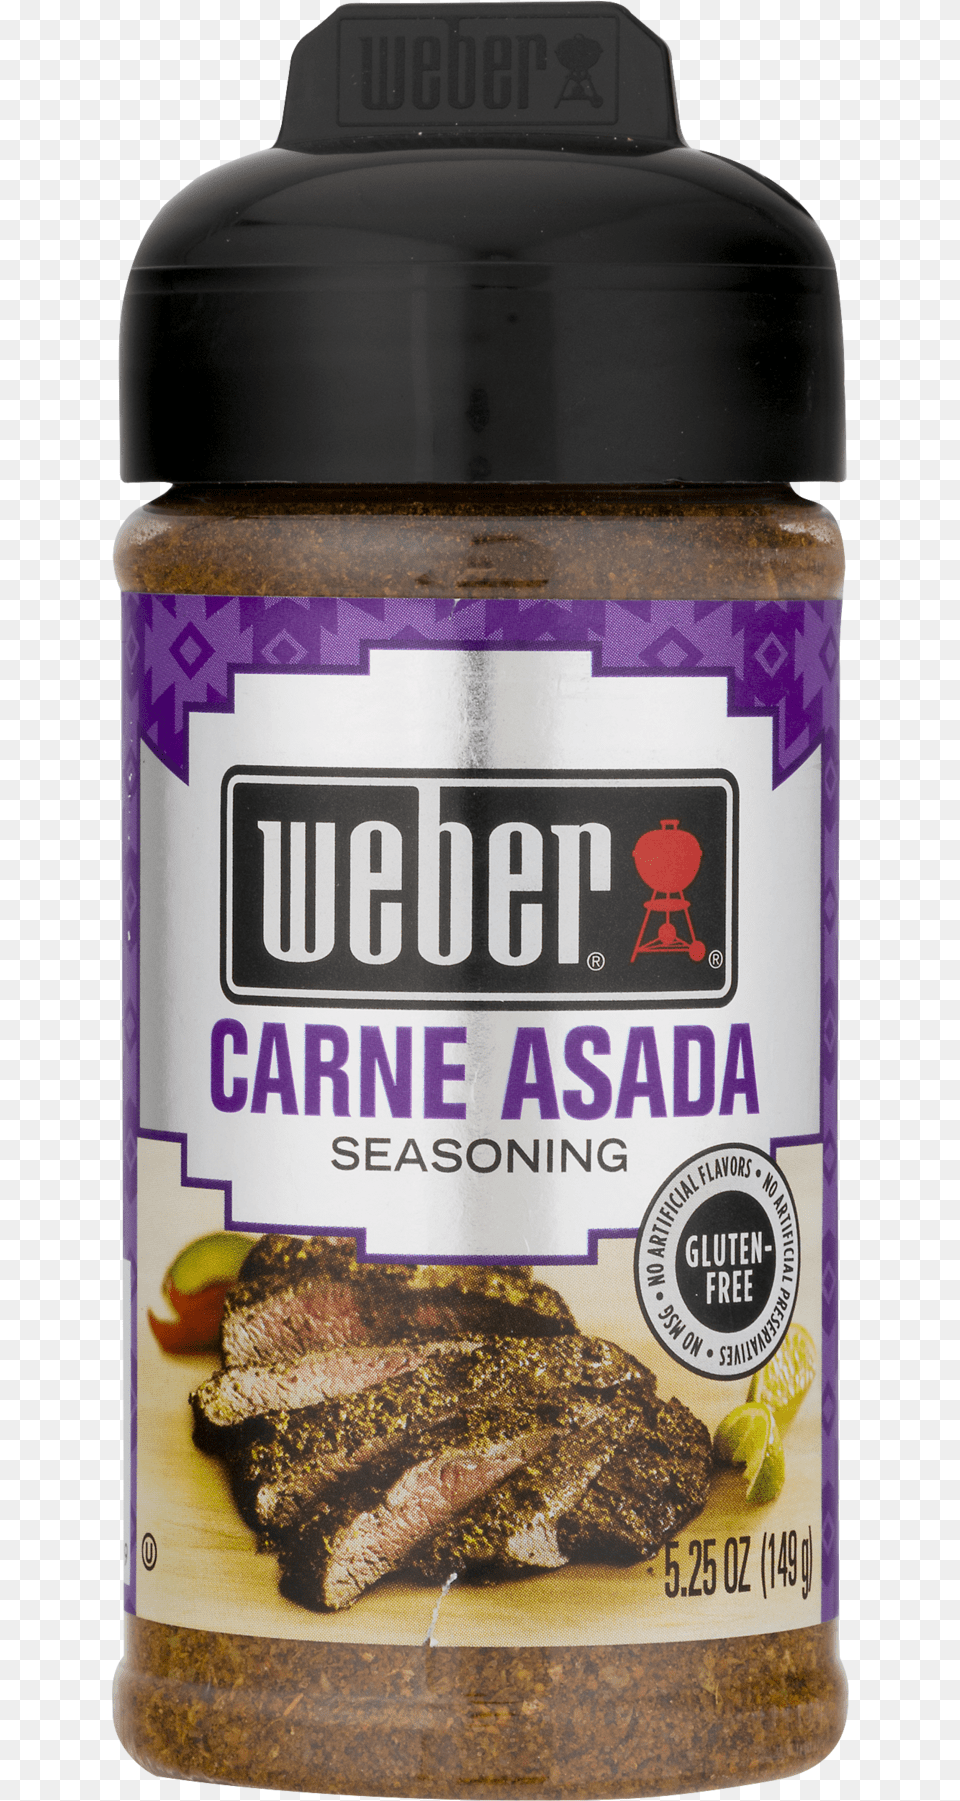 Weber Seasoning Carne Asada 27 Oz, Food, Meat, Steak, Can Png